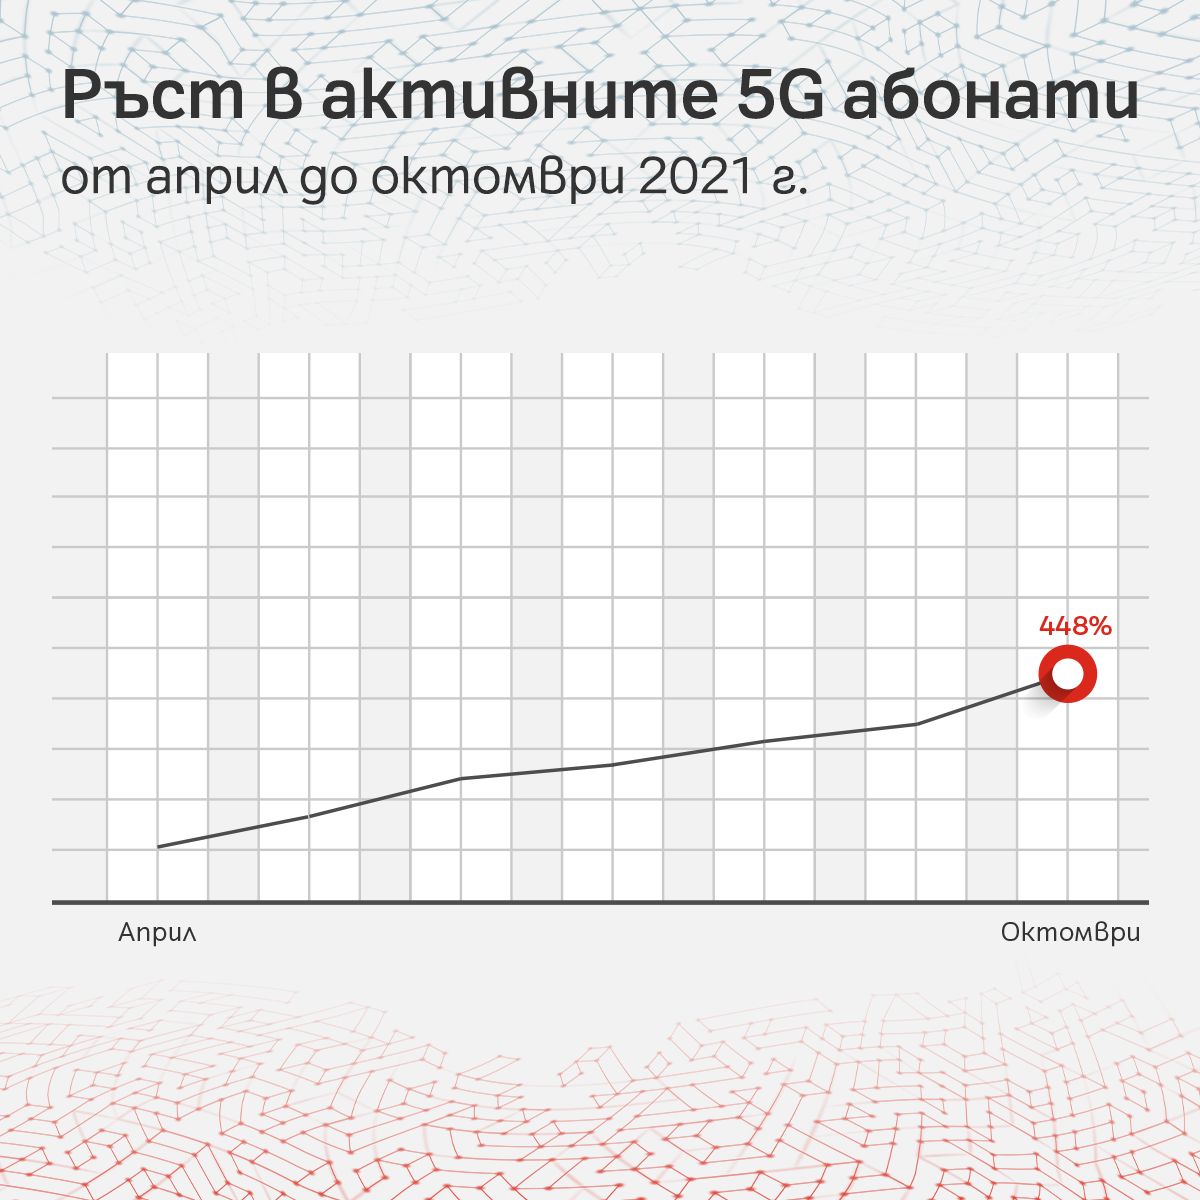 А1 бележи постоянно нарастващ интерес към 5G